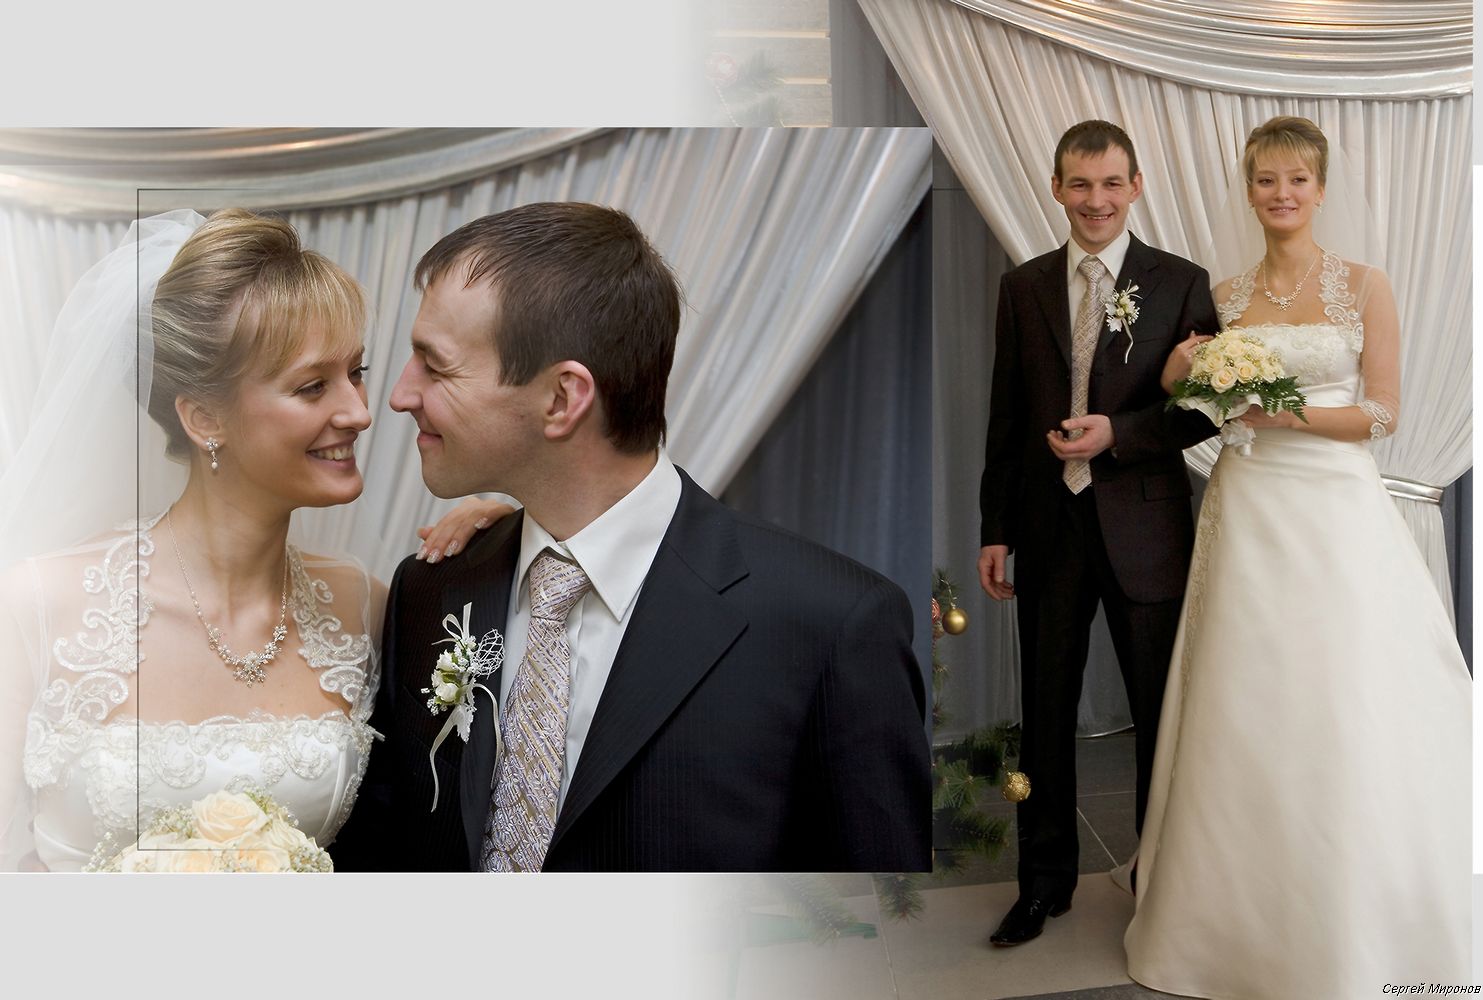 Астахов и миронов фото свадьбы